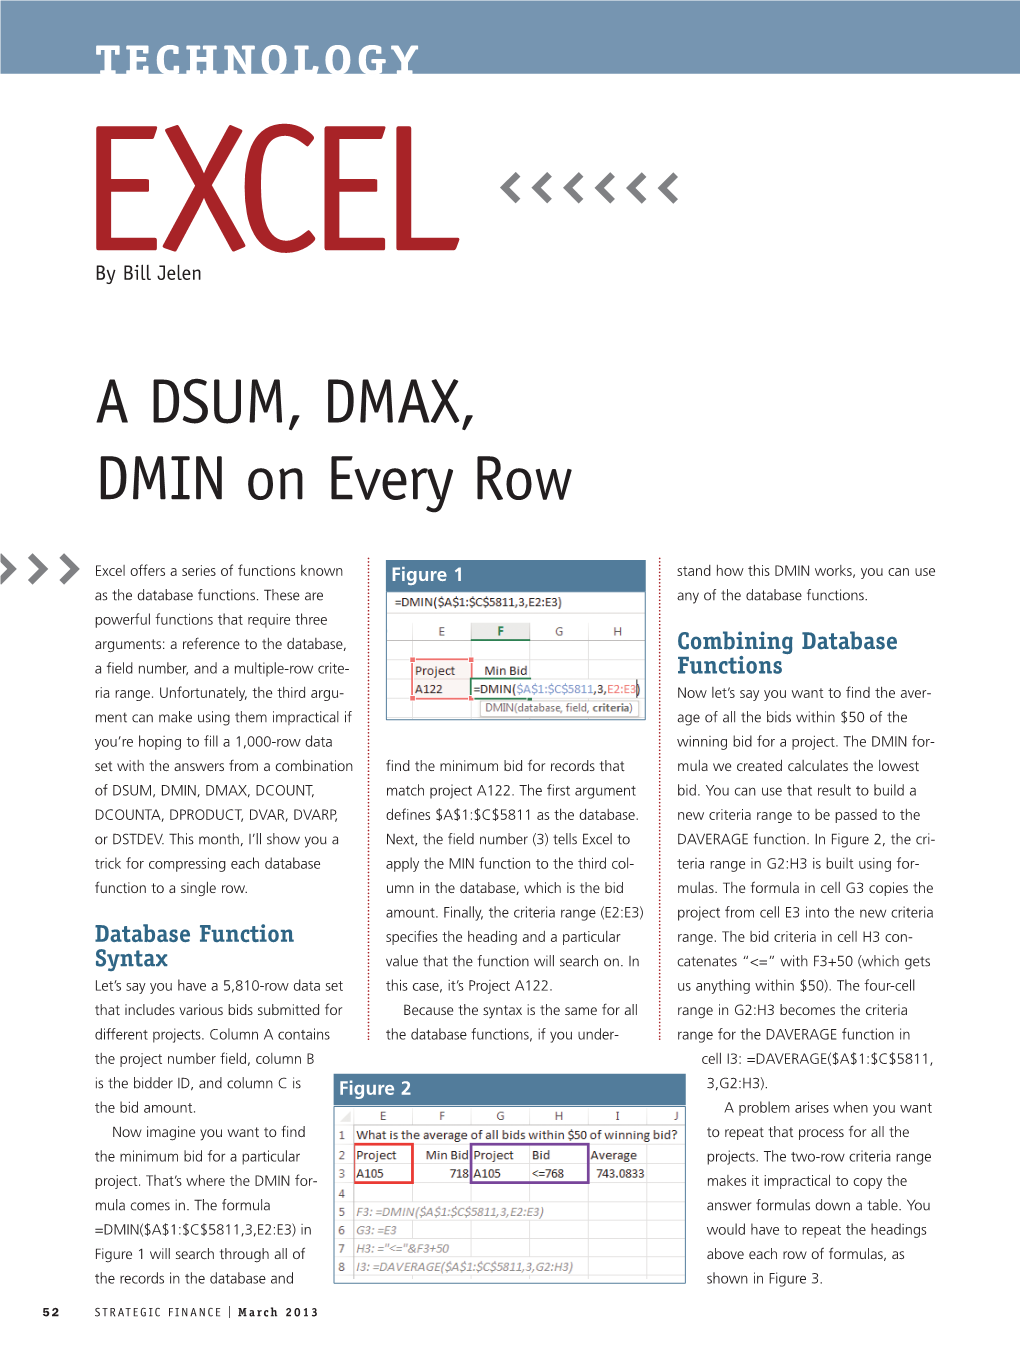 A DSUM, DMAX, DMIN on Every Row